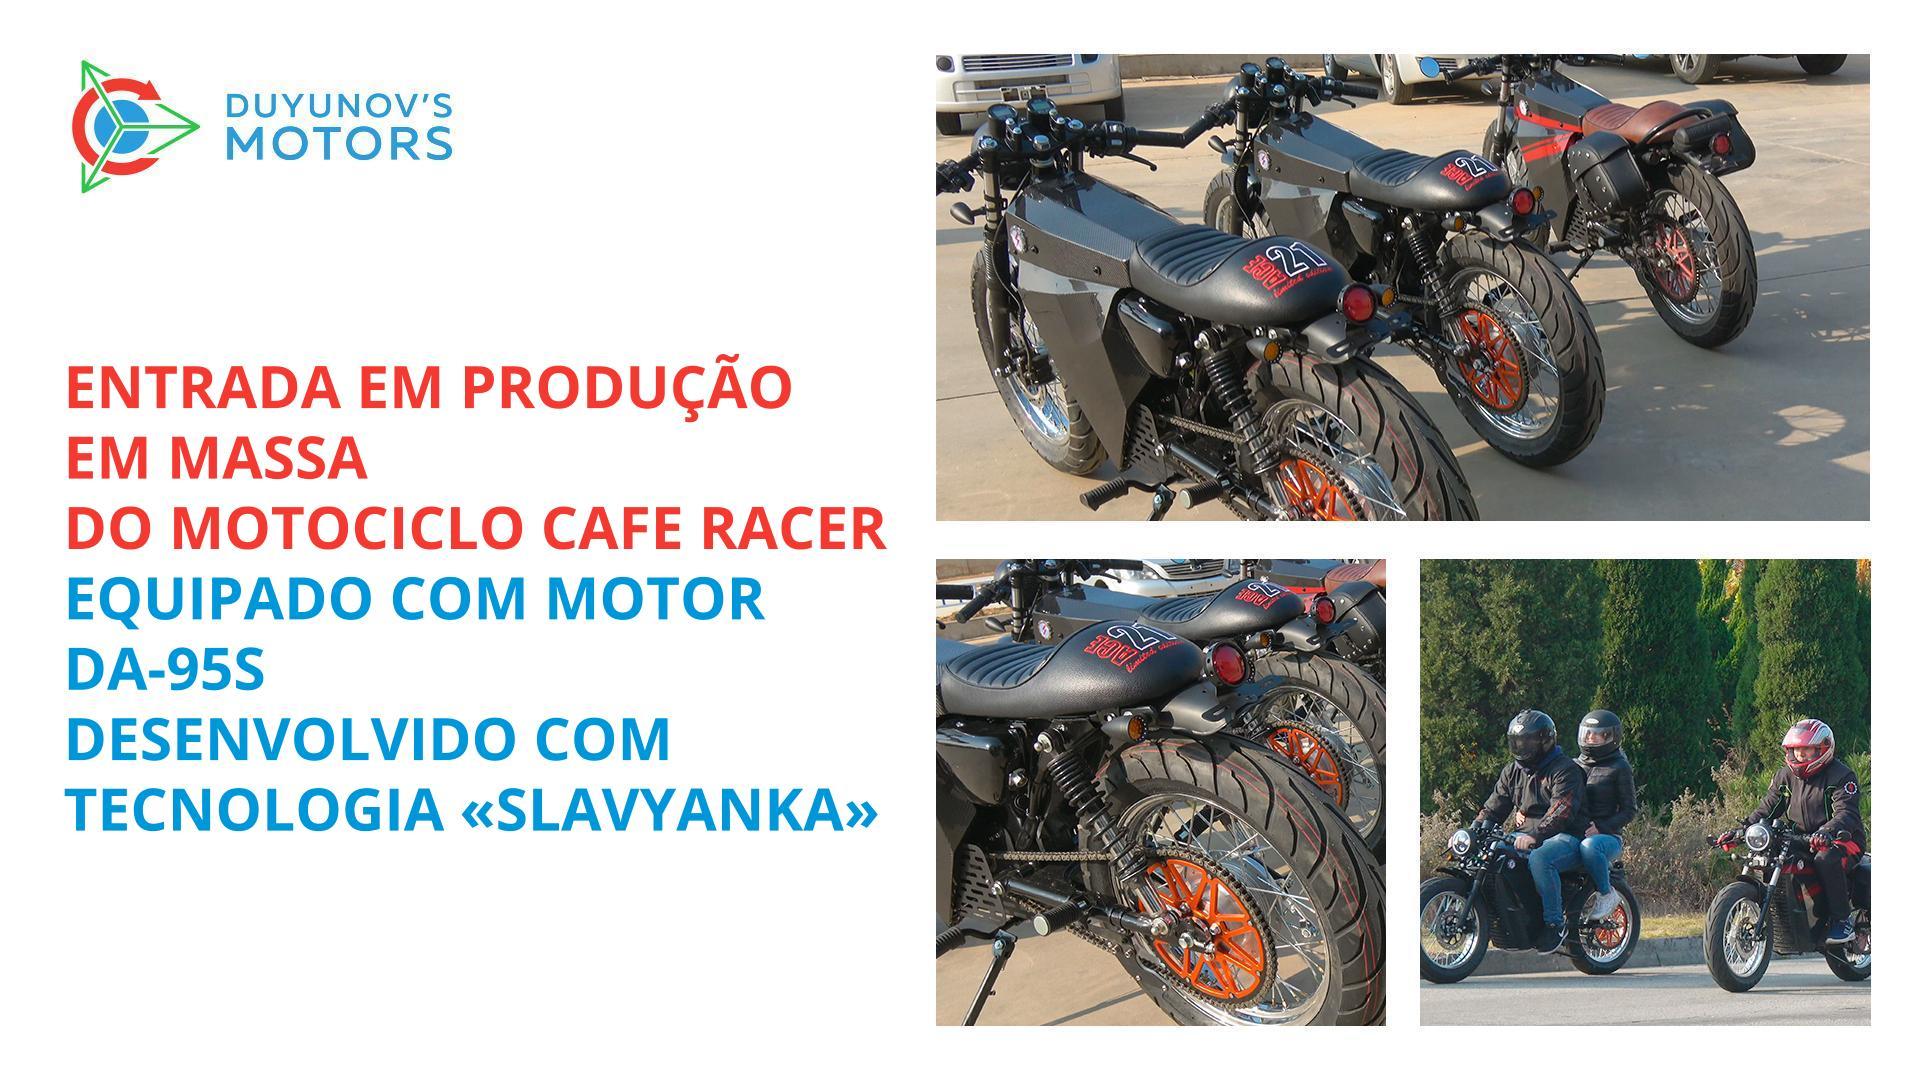 Início da produção em massa do motociclo Cafe Racer equipado com um motor DA-95S desenvolvido com aplicação da tecnologia "Slavyanka"